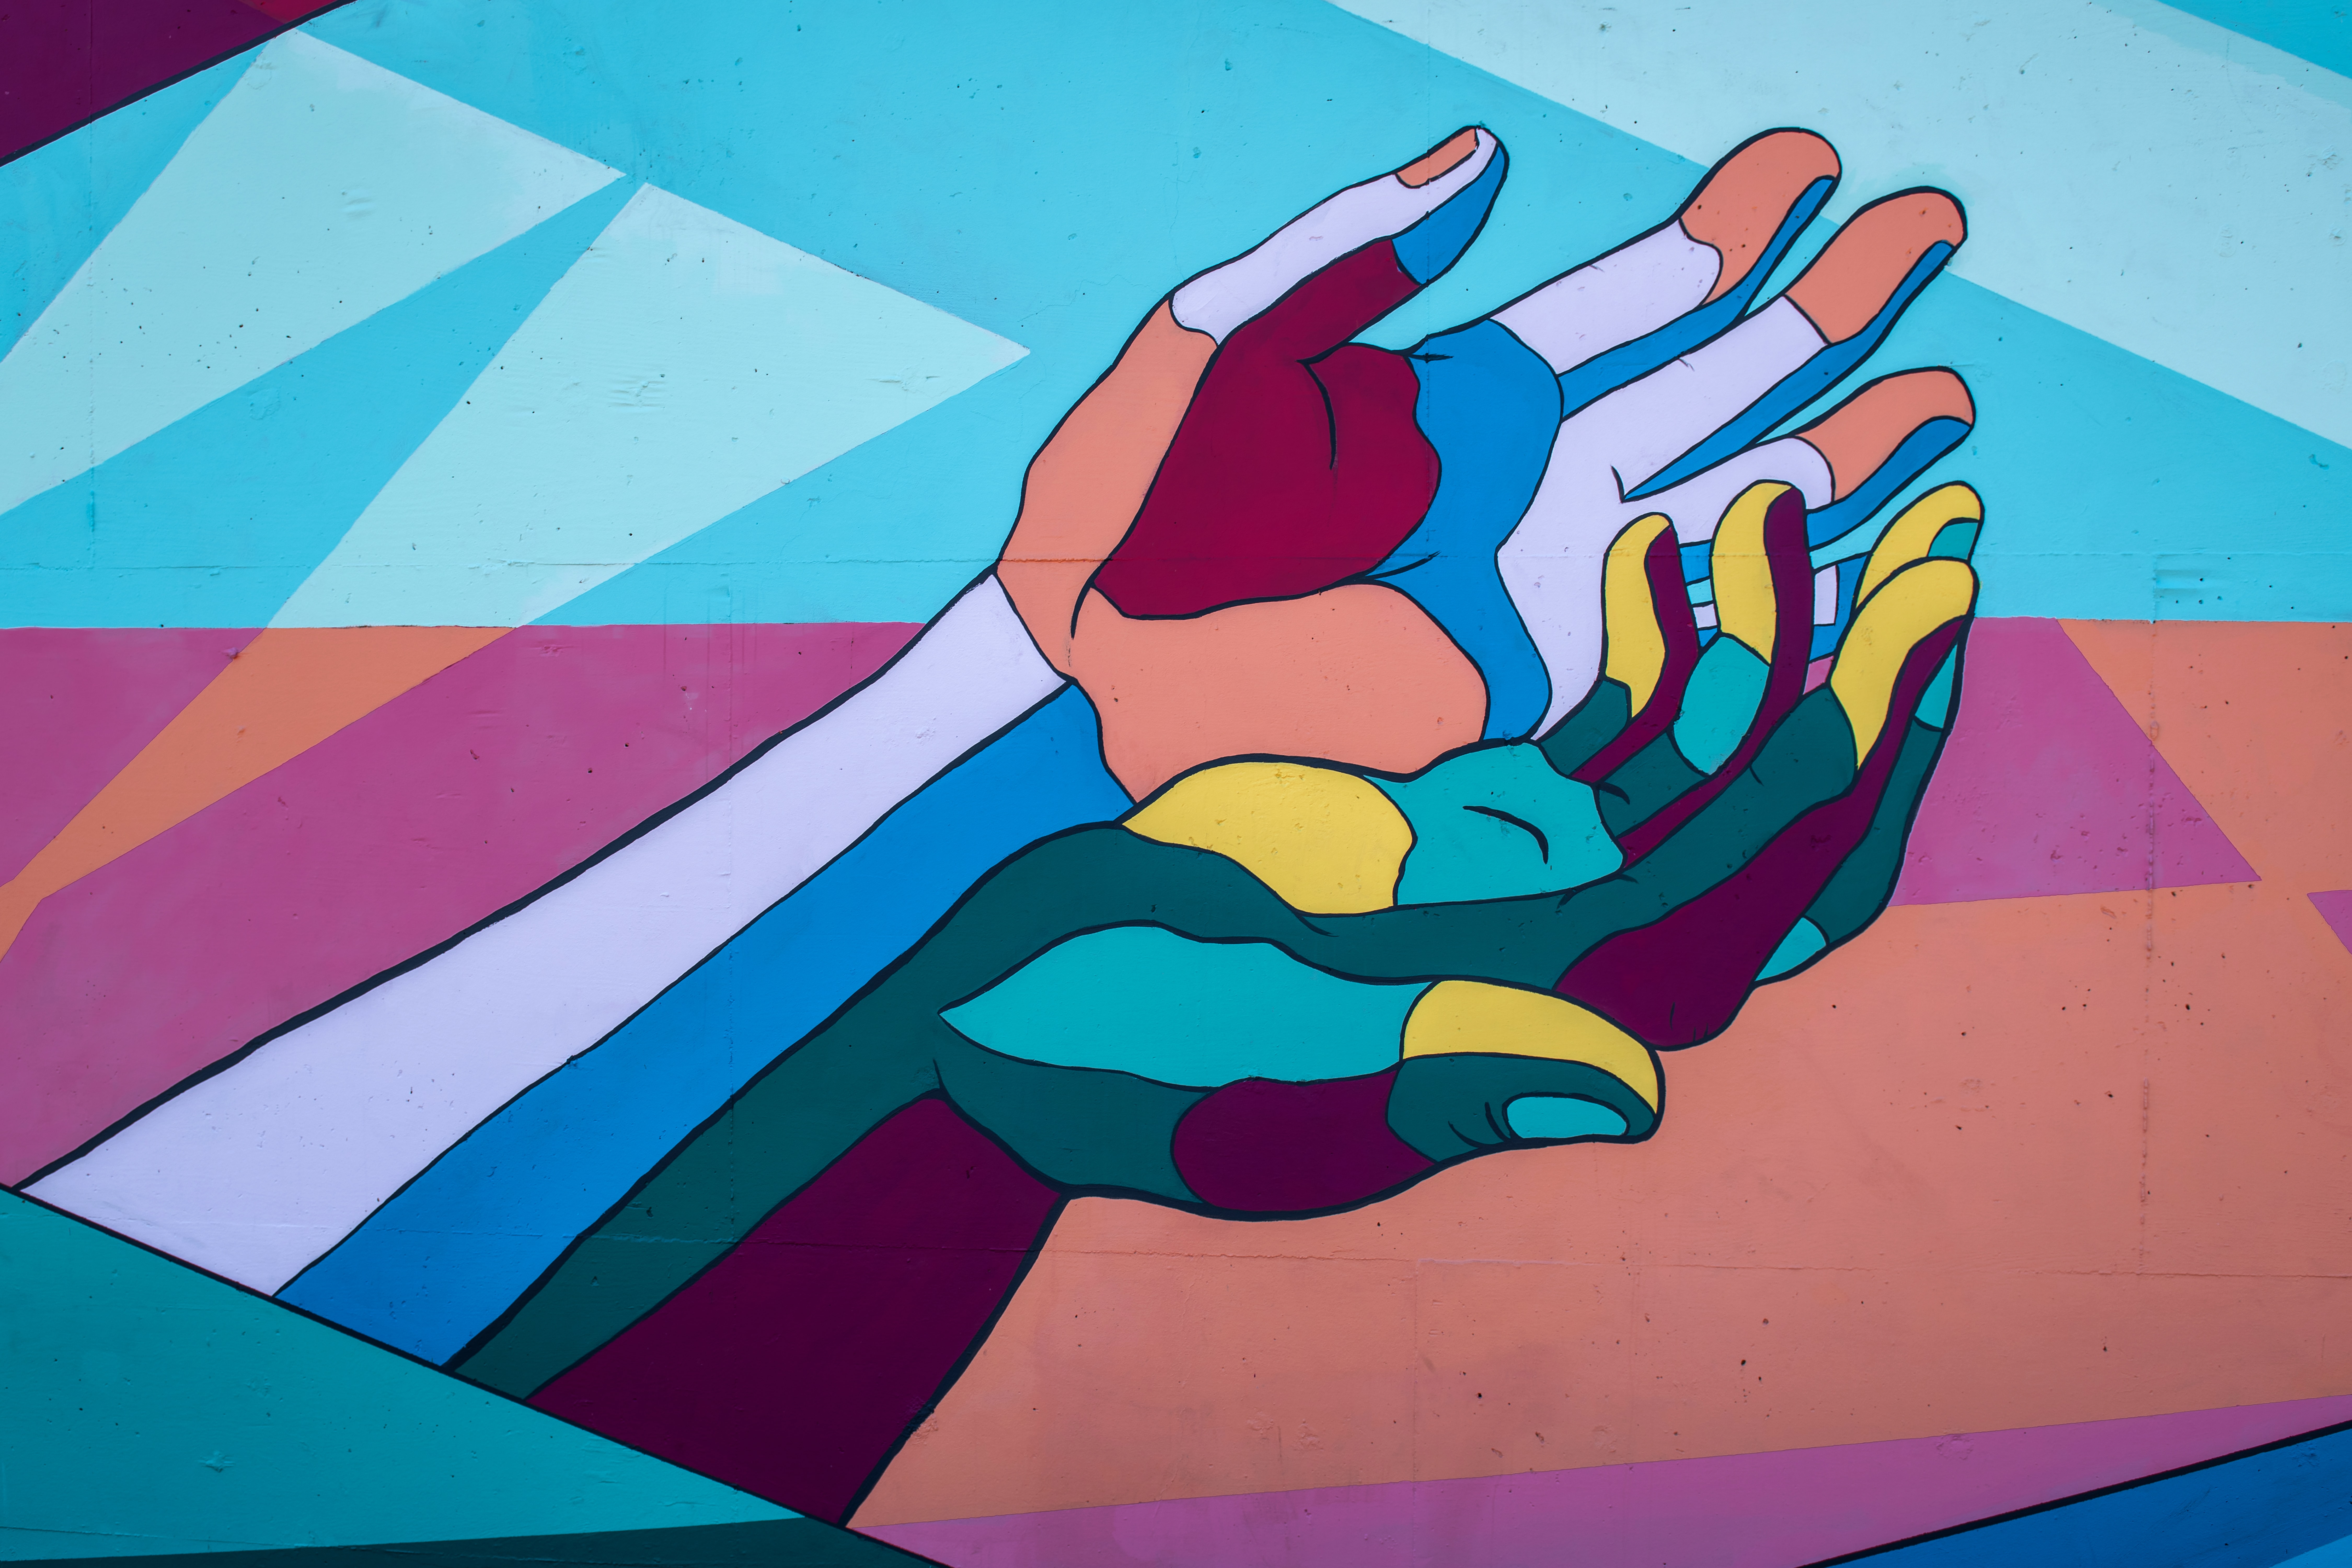 Illustration of open hands. Image: Tim Mossholder on Unsplash